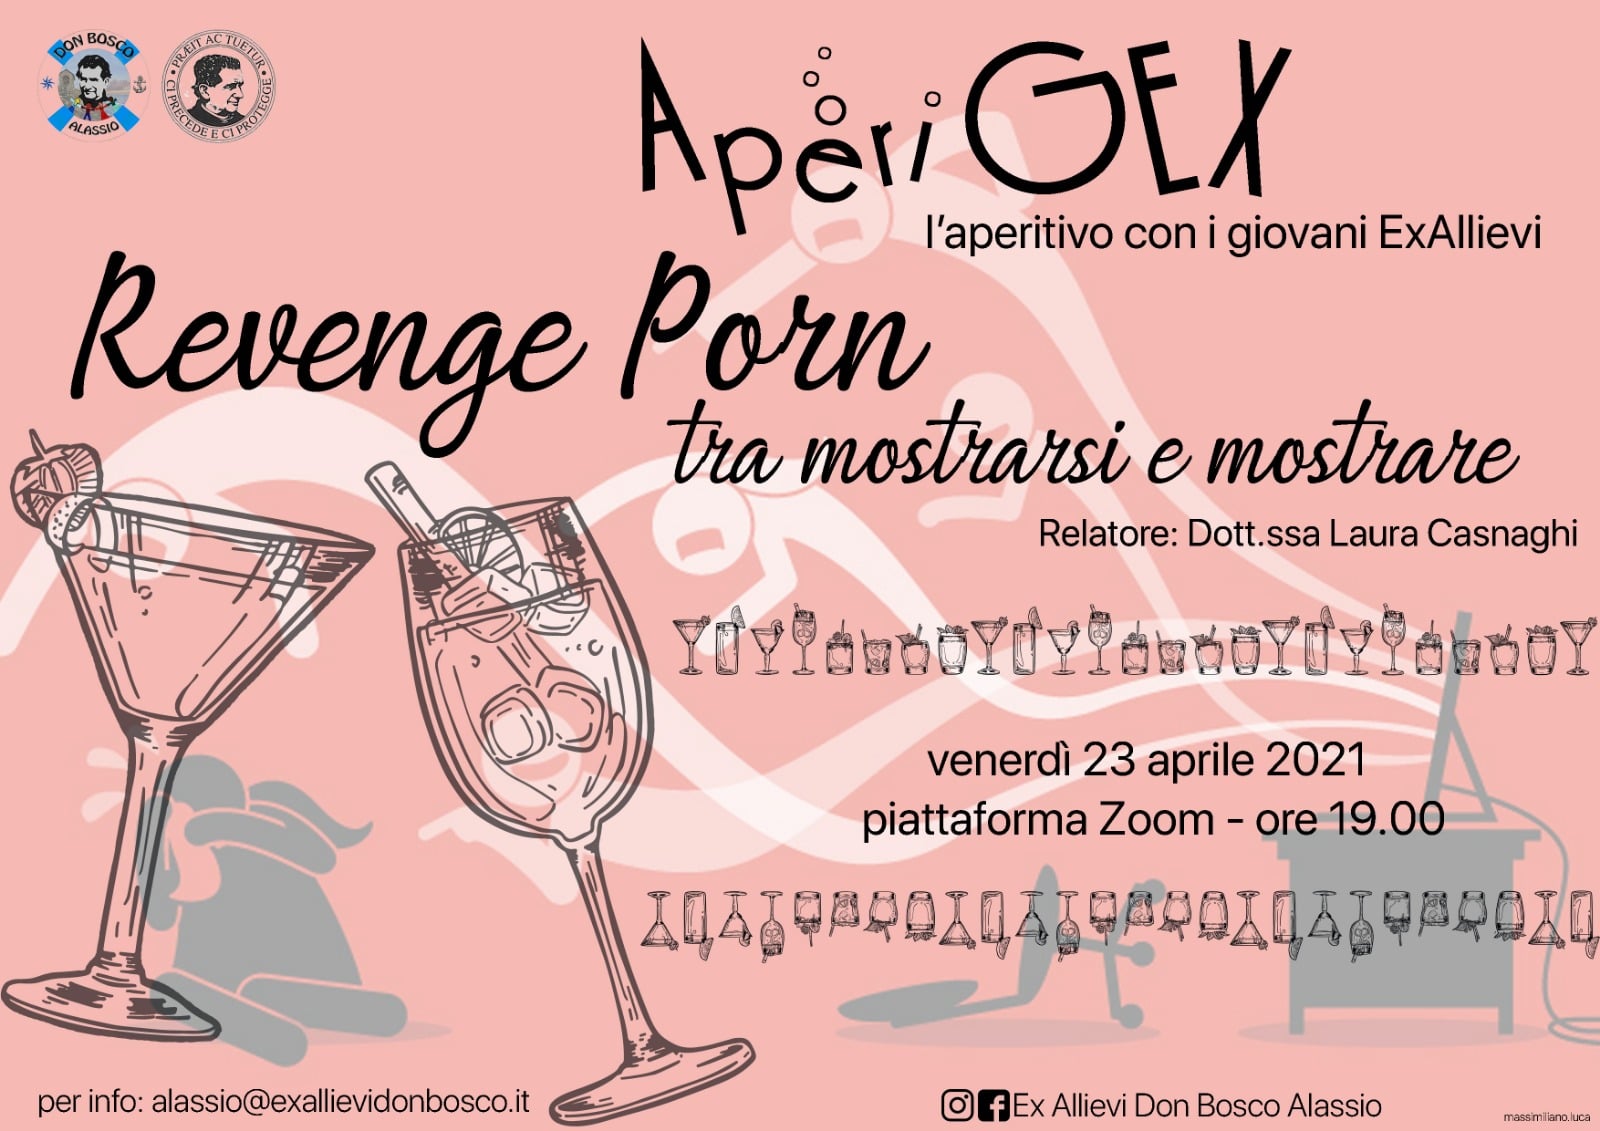 AperiGex 23/4 – “Revenge Porn. Tra mostrarsi e mostrare”